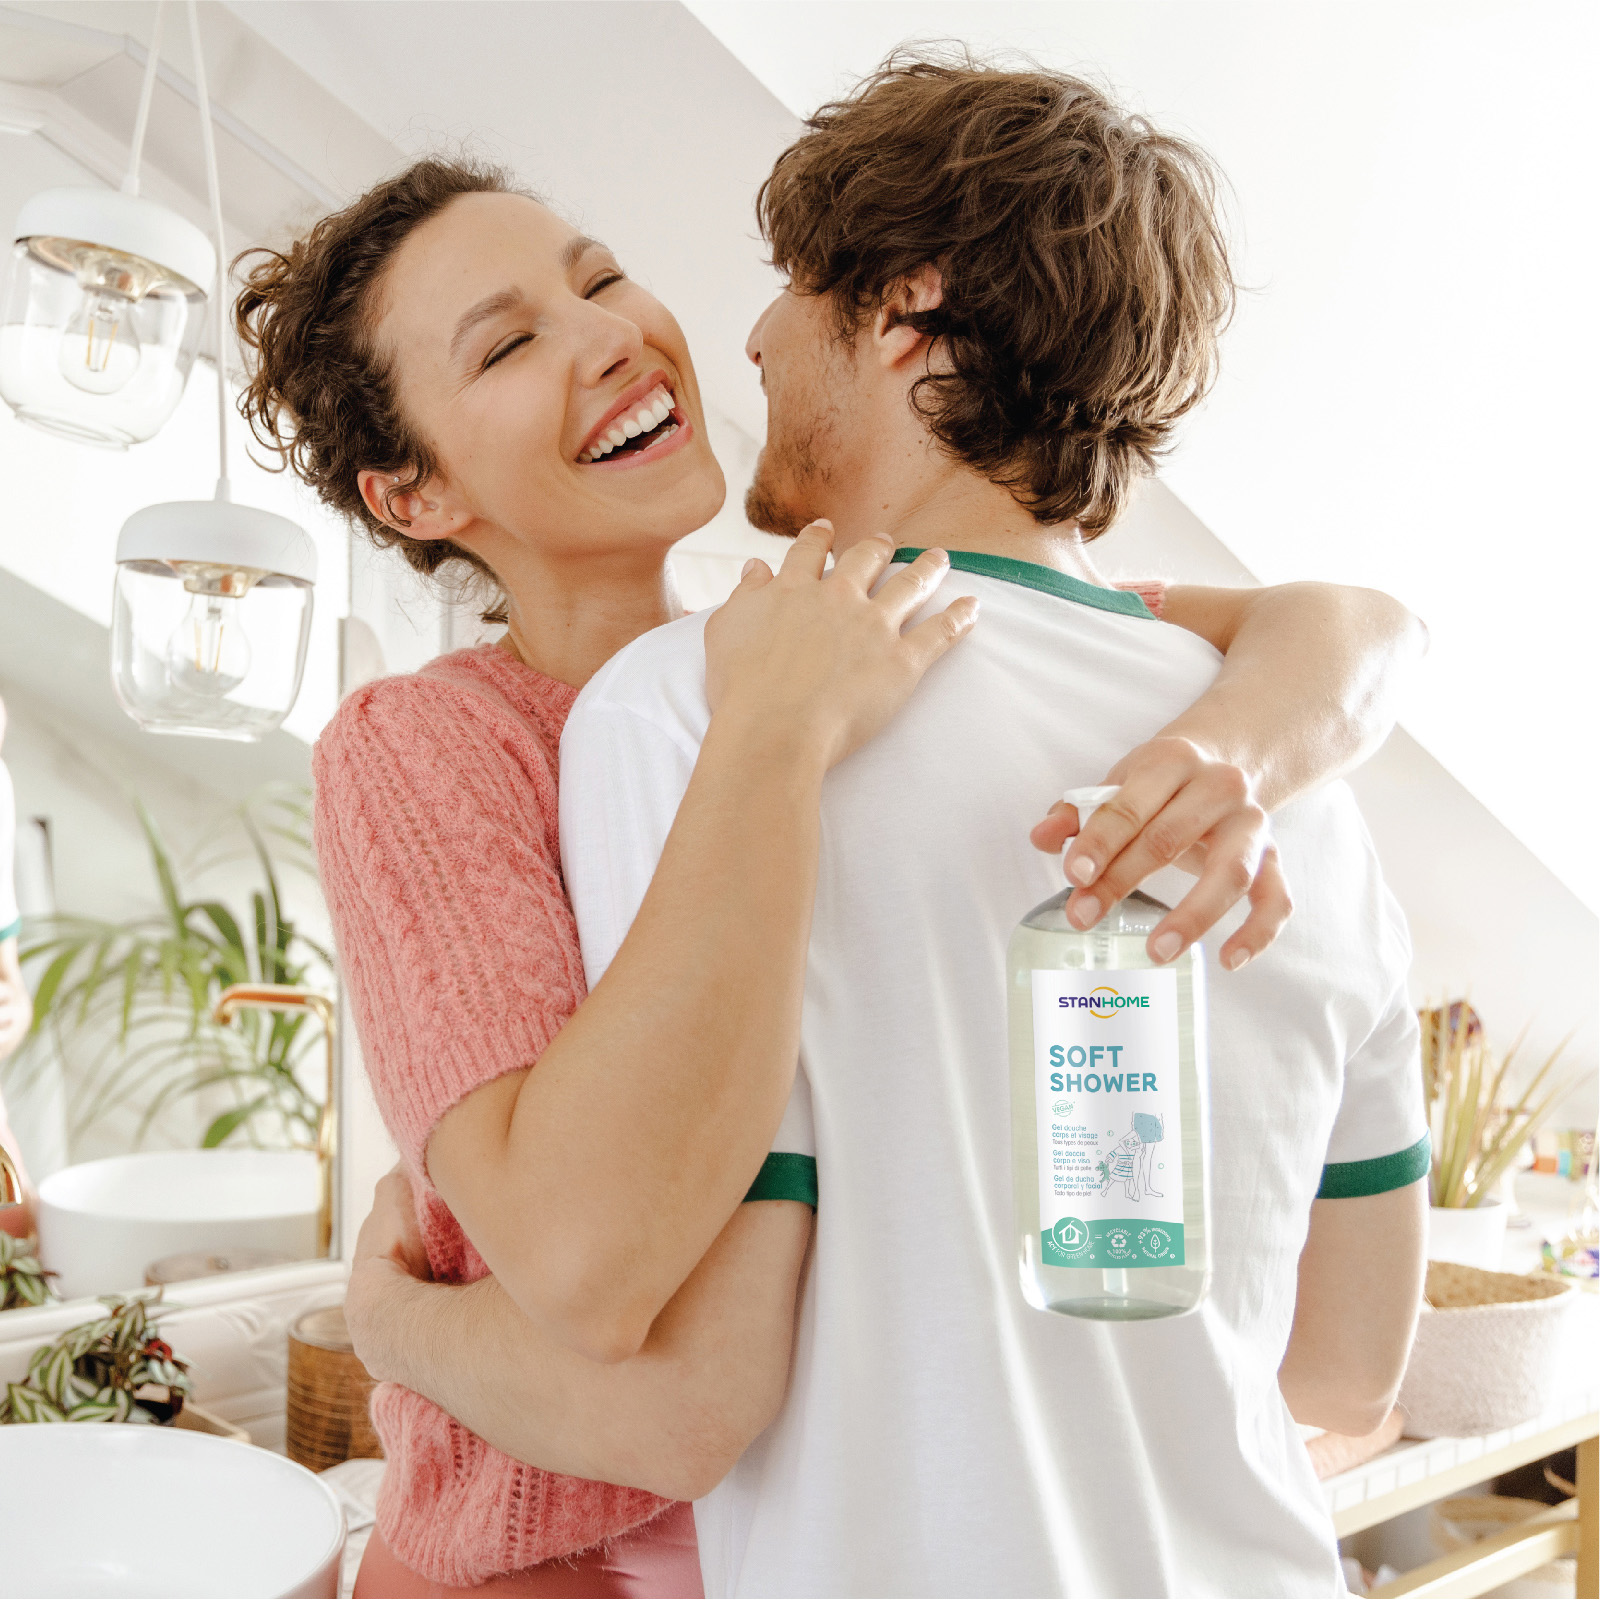 Sữa tắm, rửa mặt không xà phòng cho mọi loại da và da nhạy cảm Stanhome Family Expert Soft Shower 740ml/chai